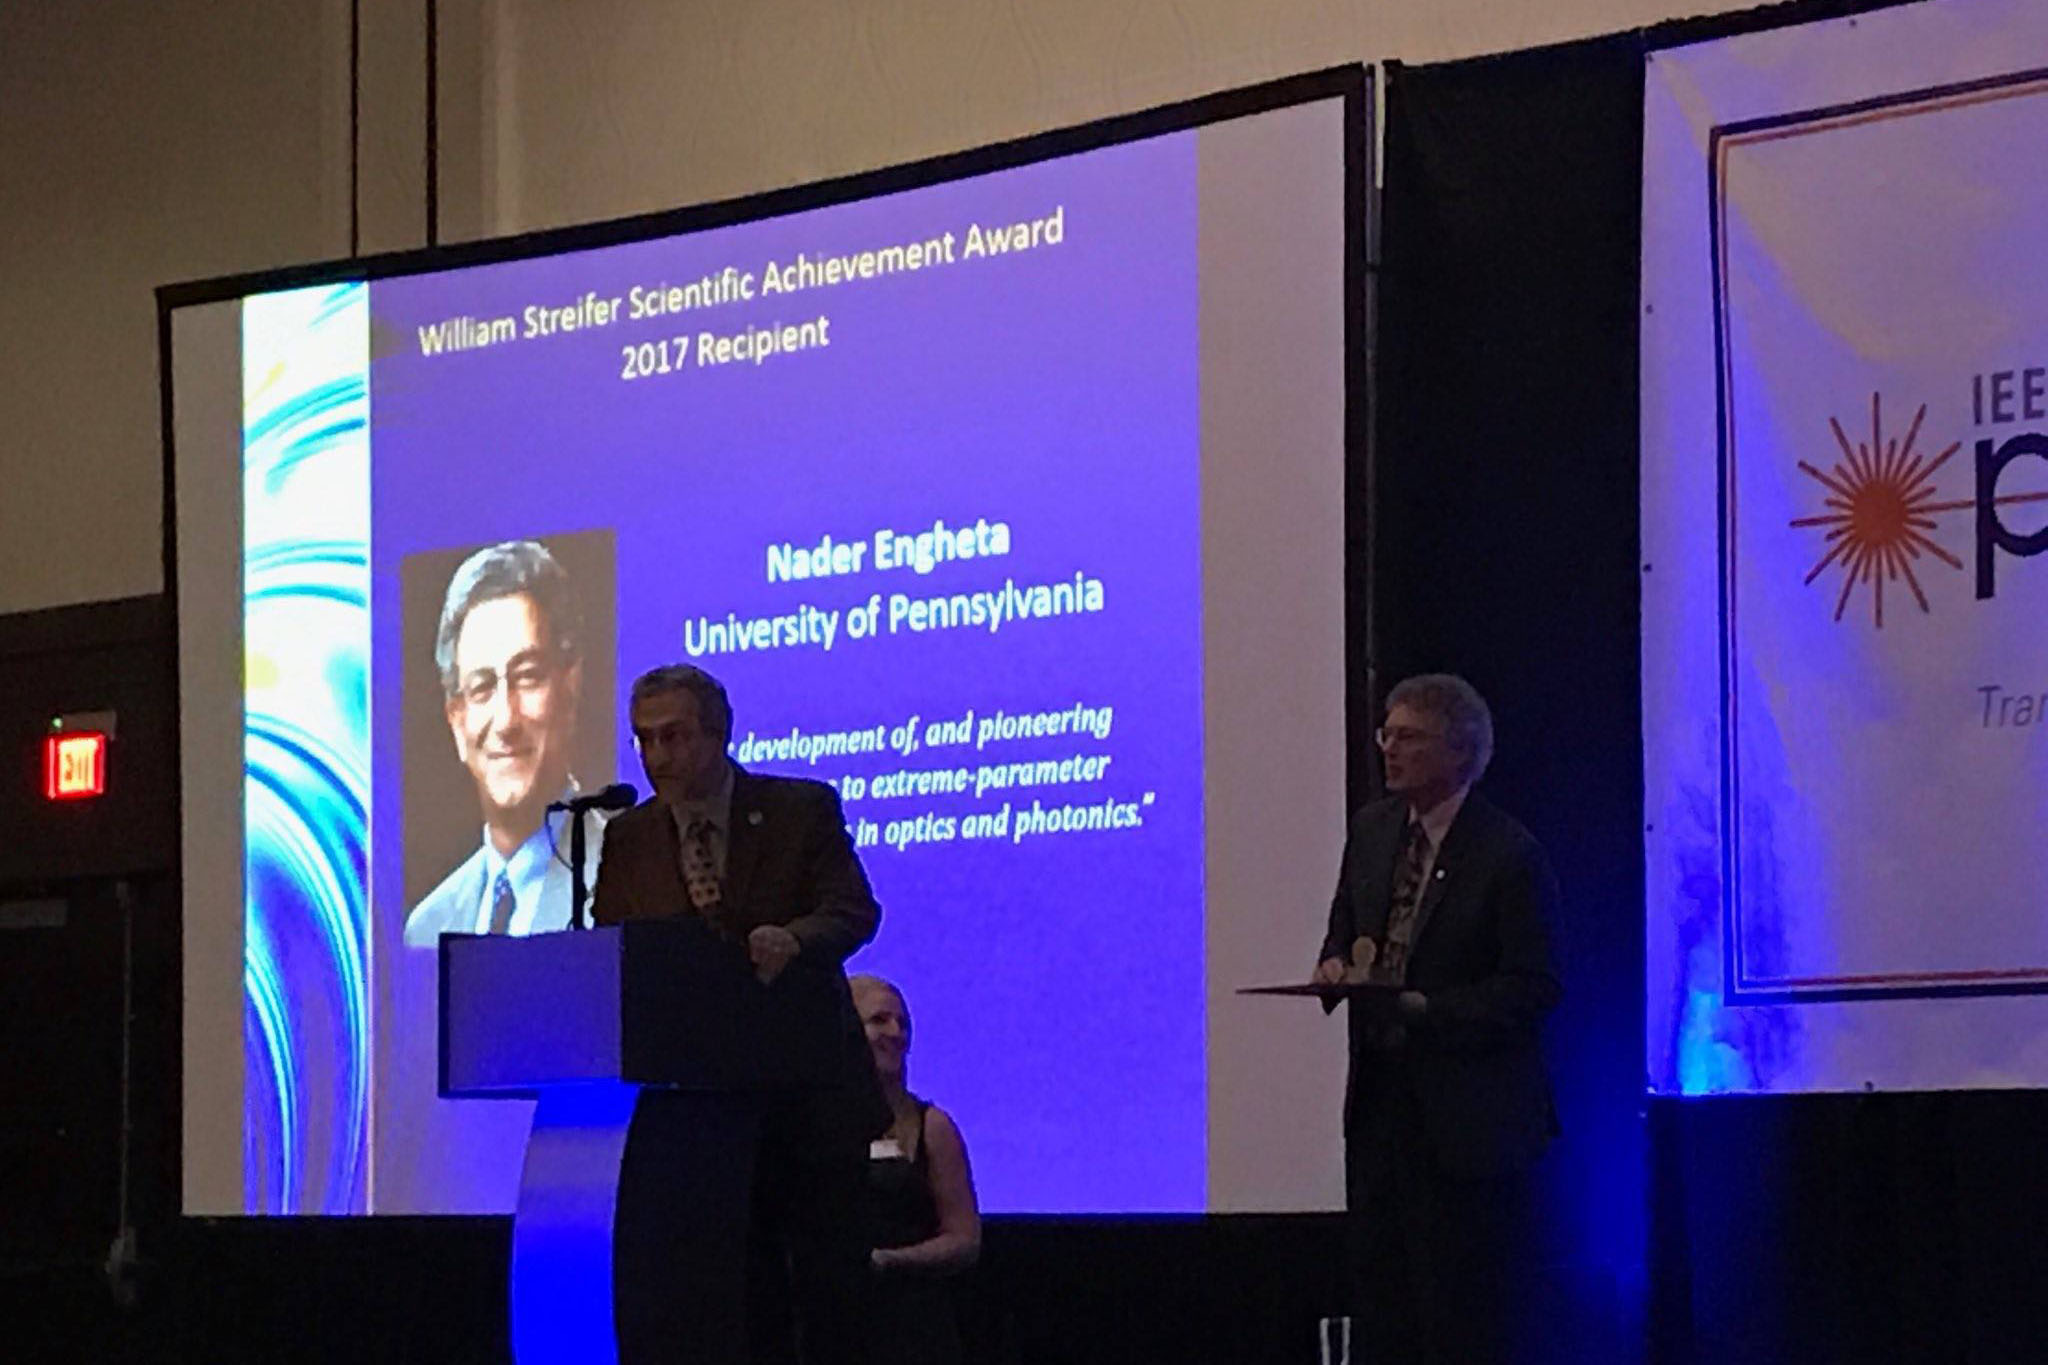 Nader Engheta receiving the 2017 William Streifer Scientific Achievement Award